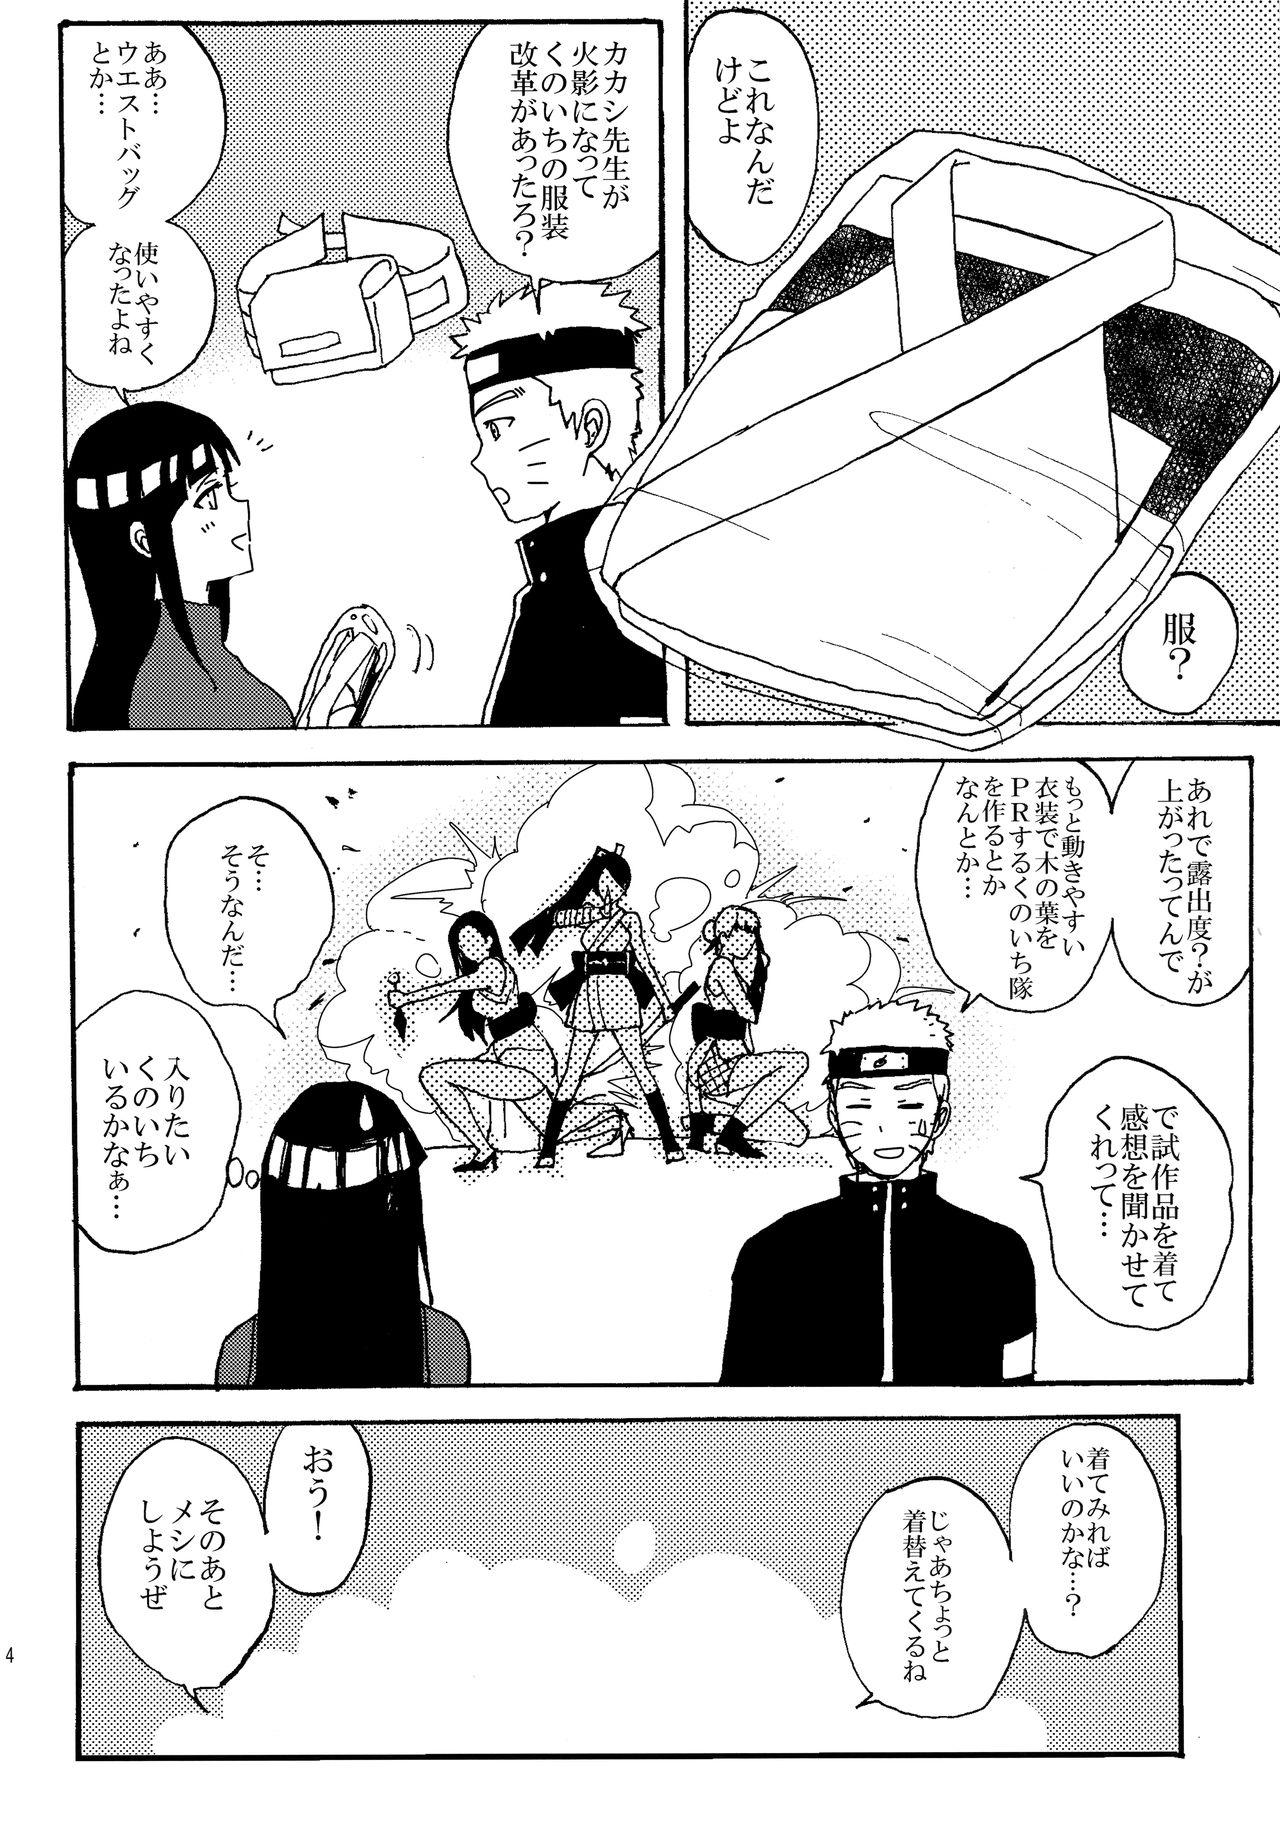 Footjob Shinkon Hinata no Kunoichi Cosplay datteba yo! - Naruto Bottom - Page 3